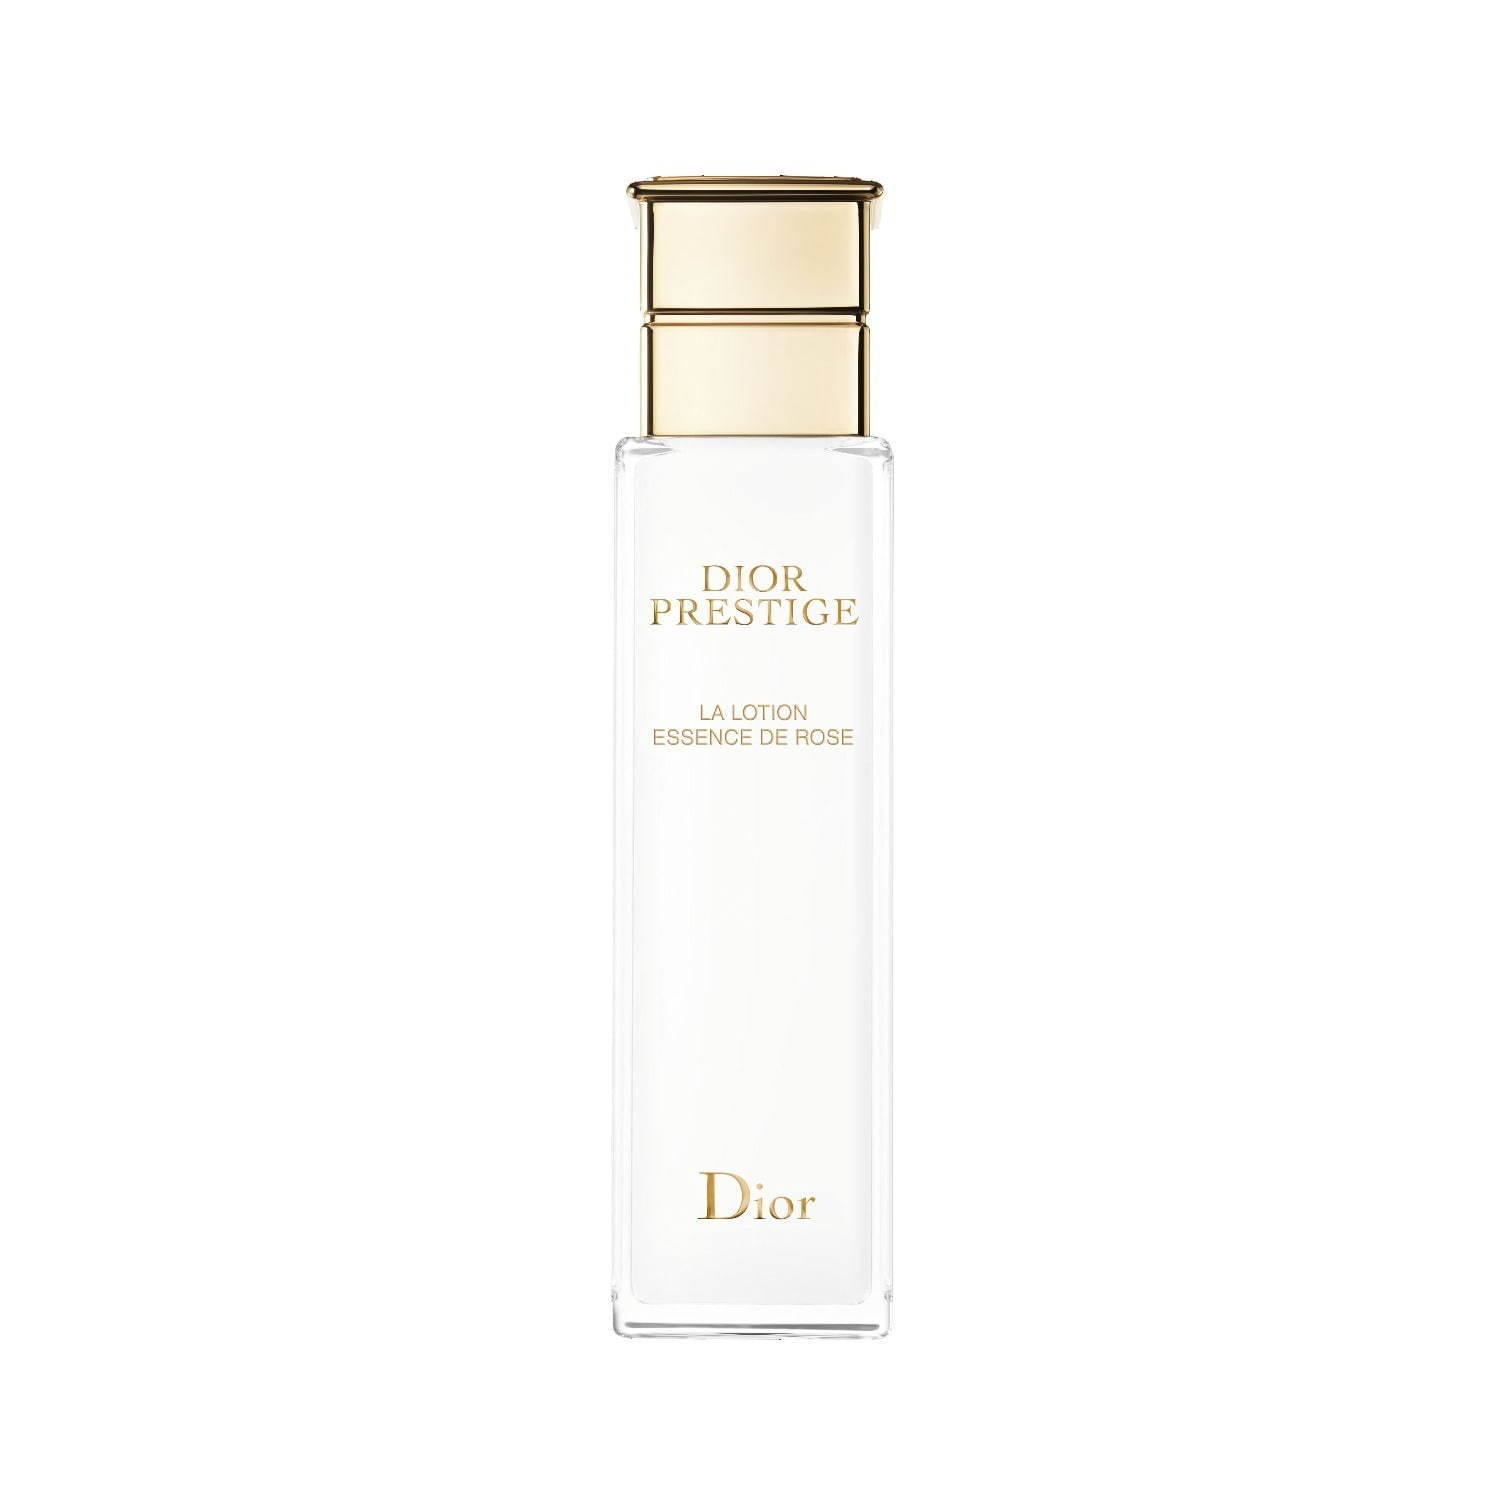 ディオール プレステージ“上質なローズの香り”の新化粧水、グラン